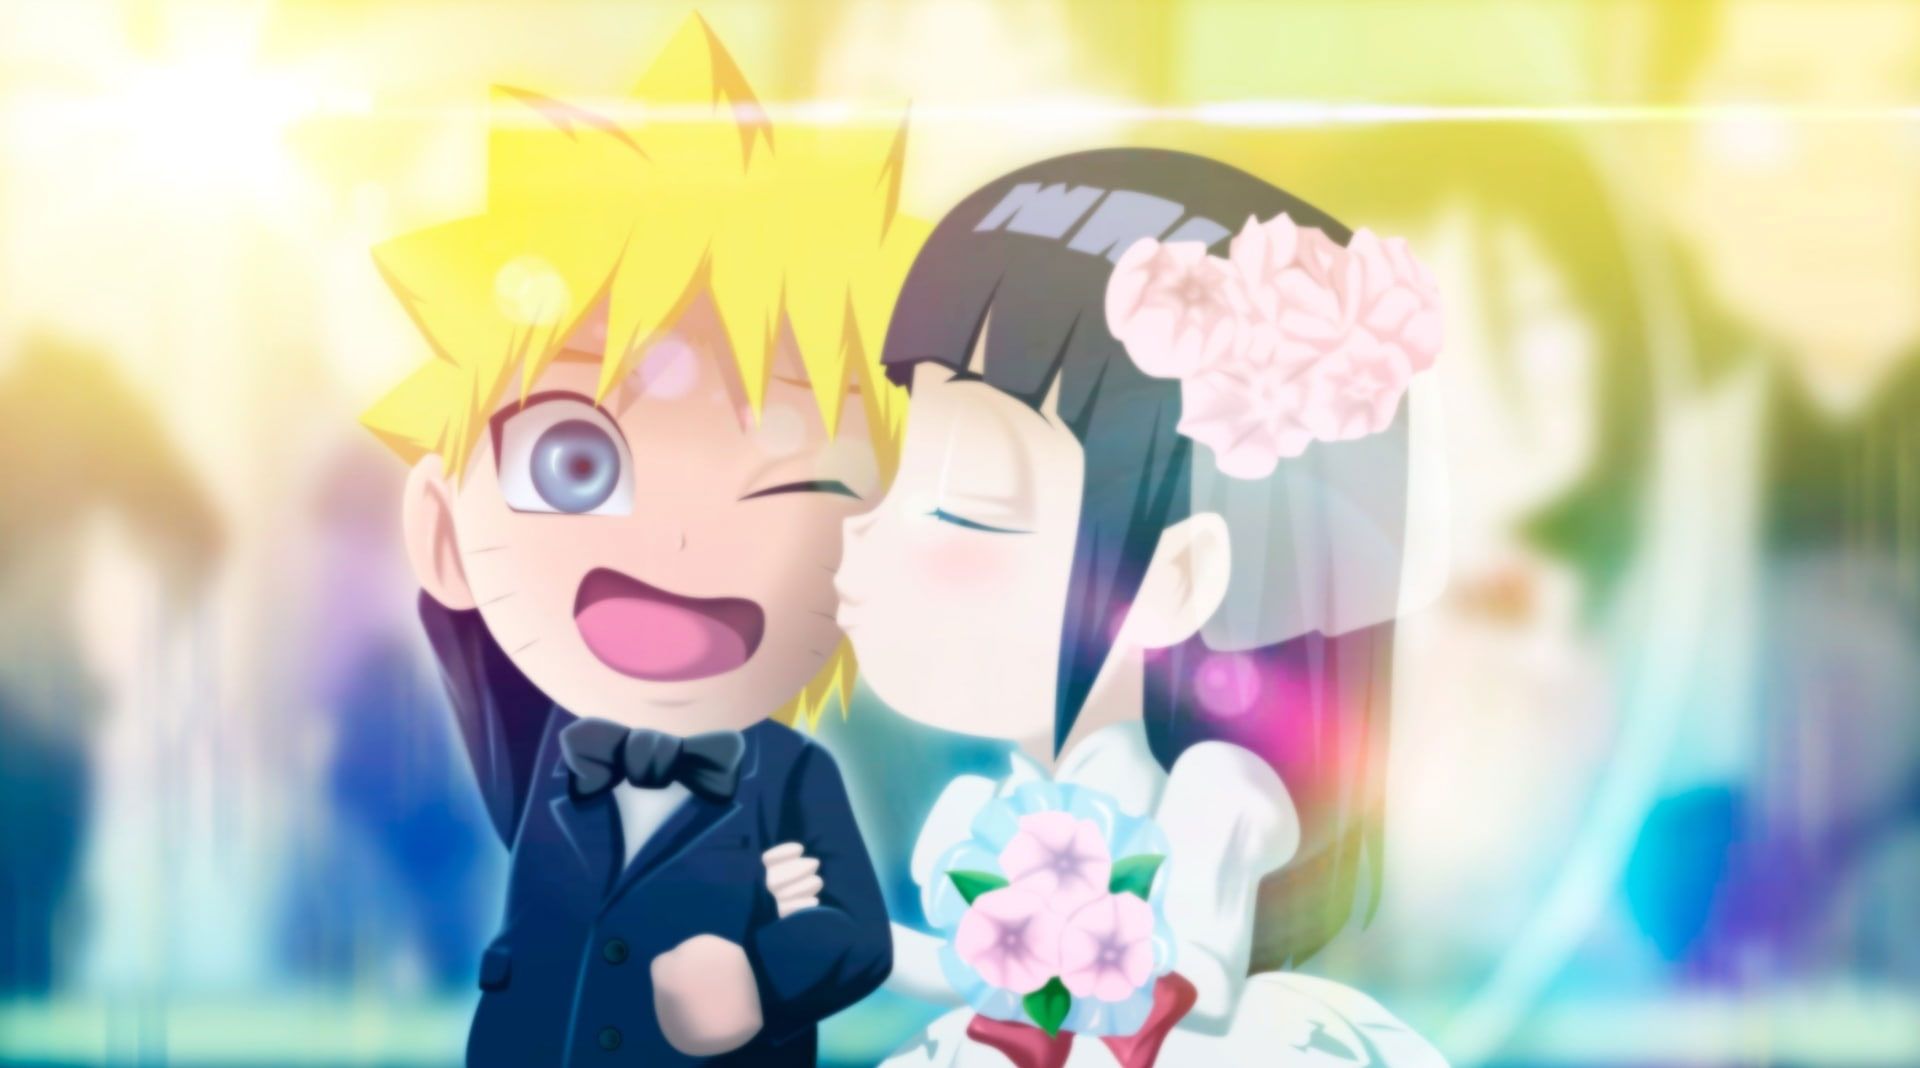 Anime Naruto Chibi Wallpaper, Hinata Hyūga, Naruto Uzumaki, Wedding • Wallpaper For You